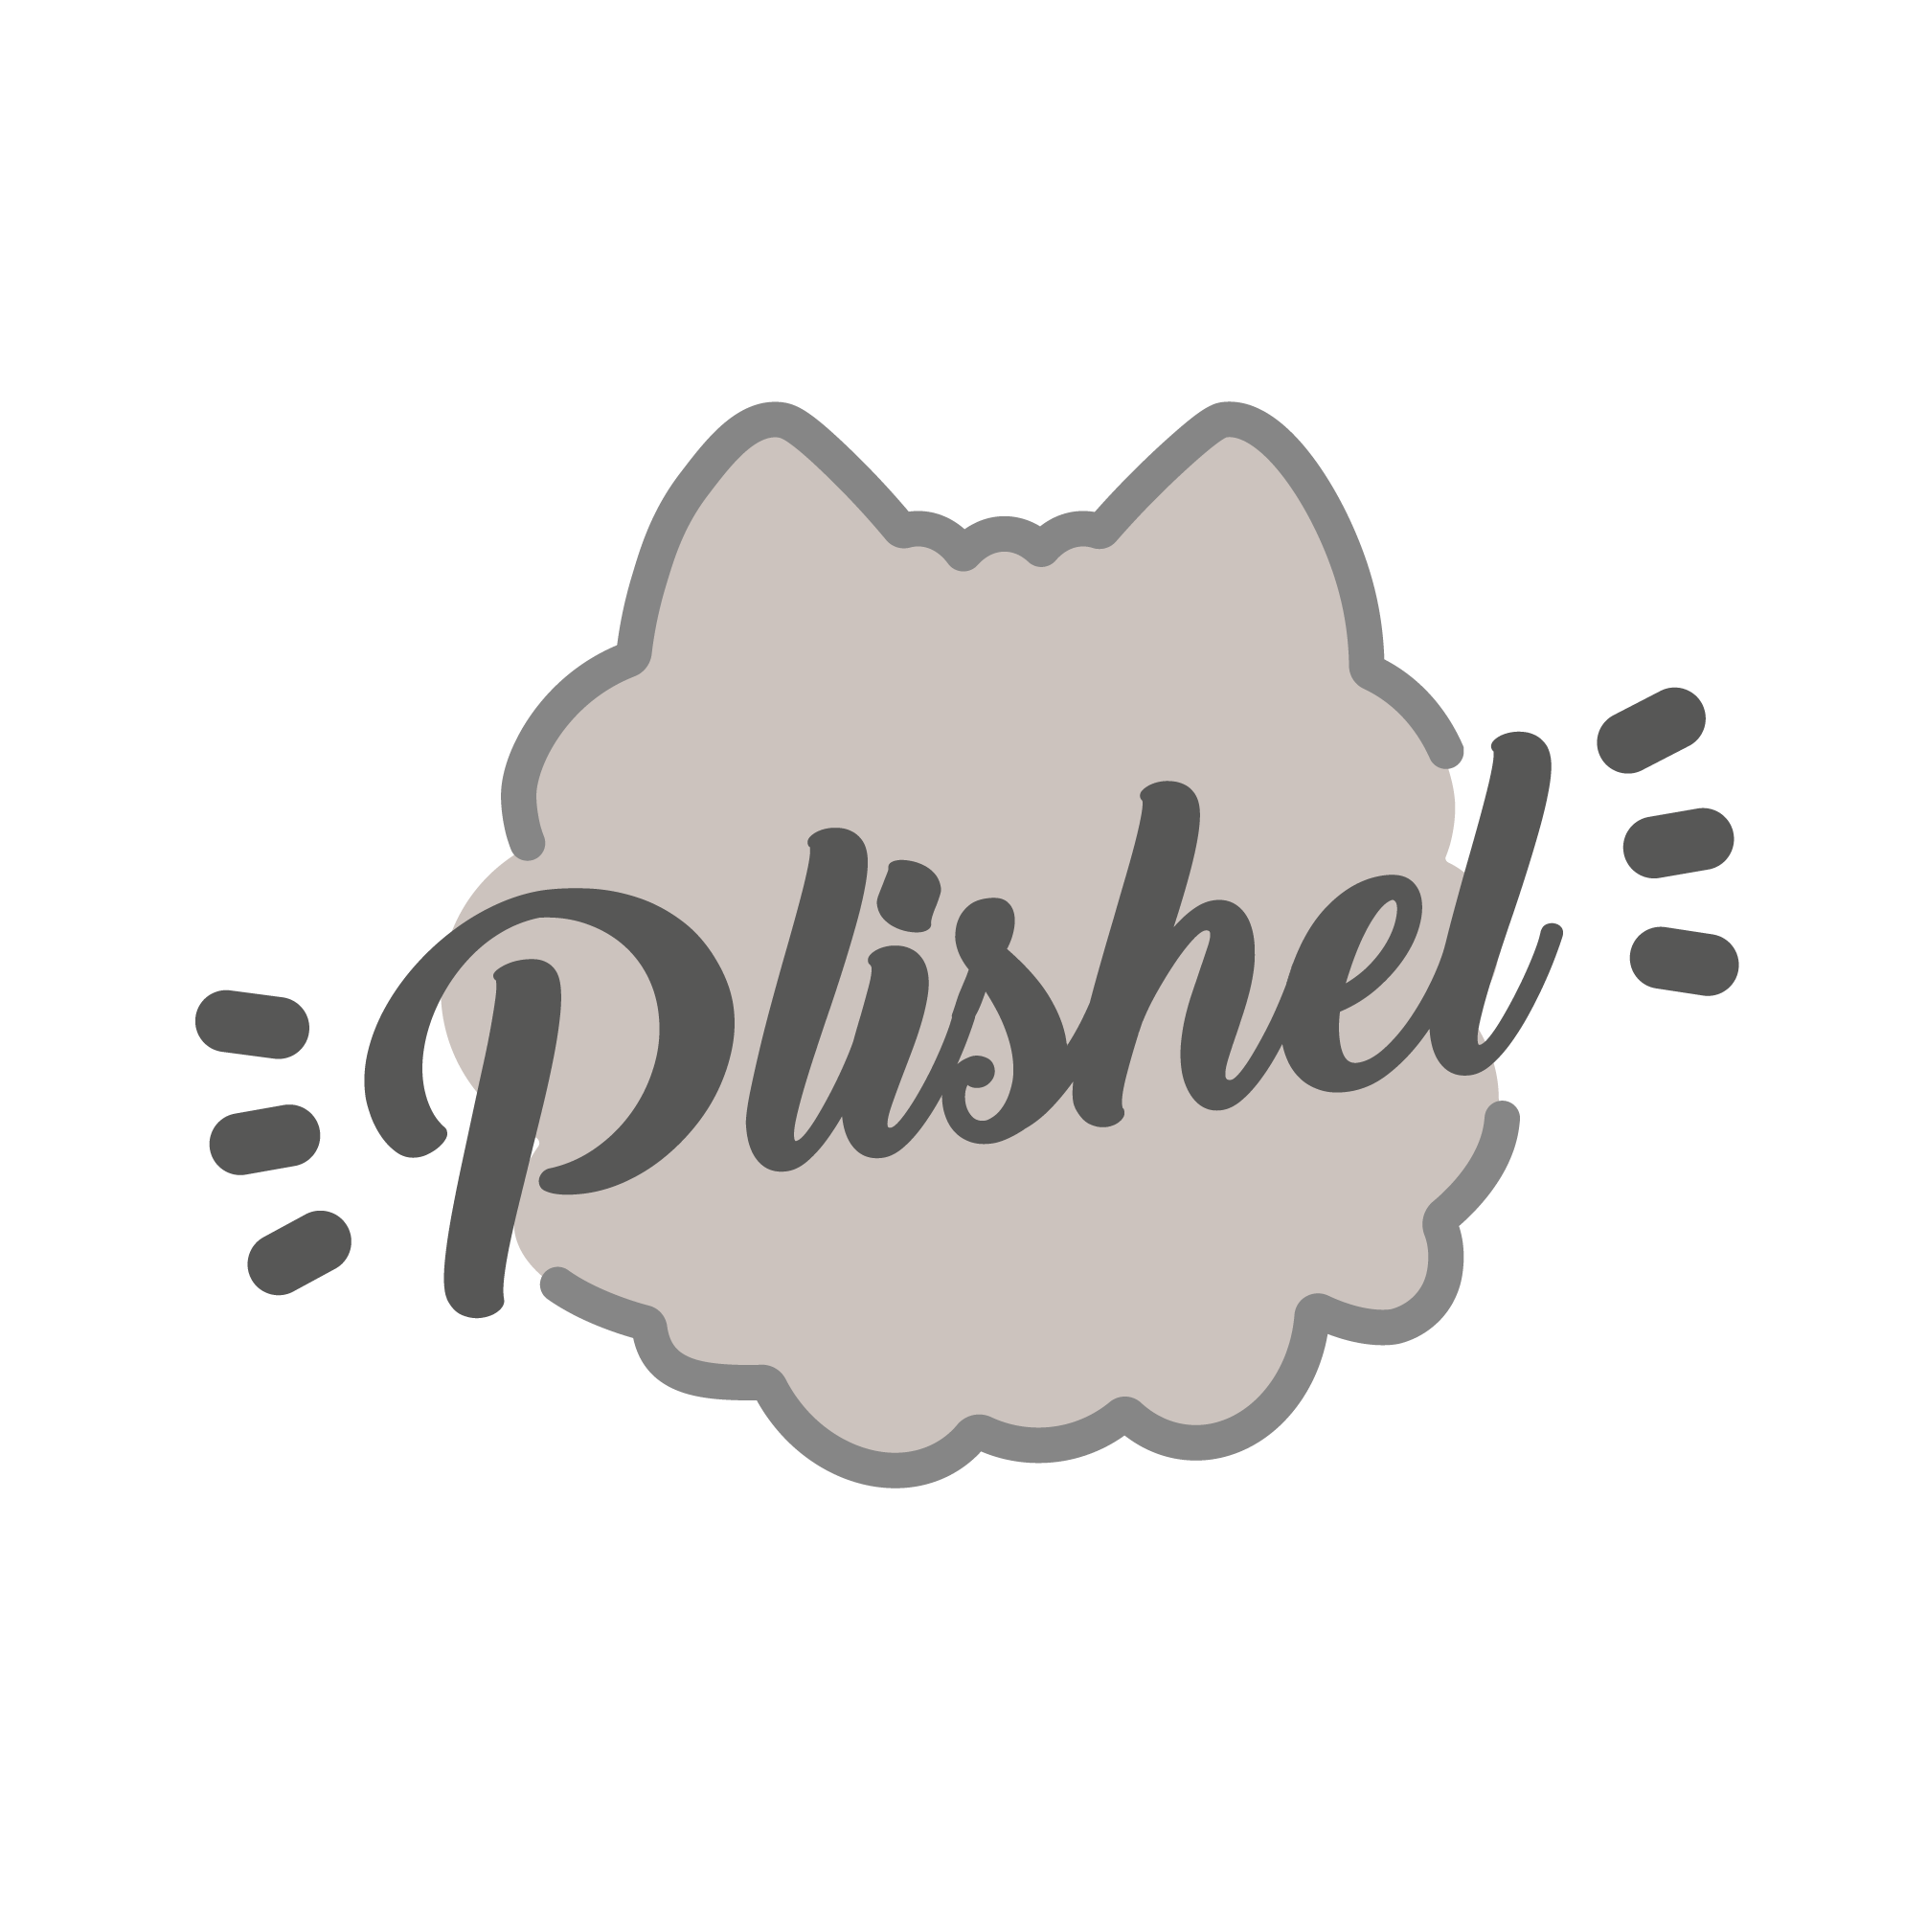 plishel_logo